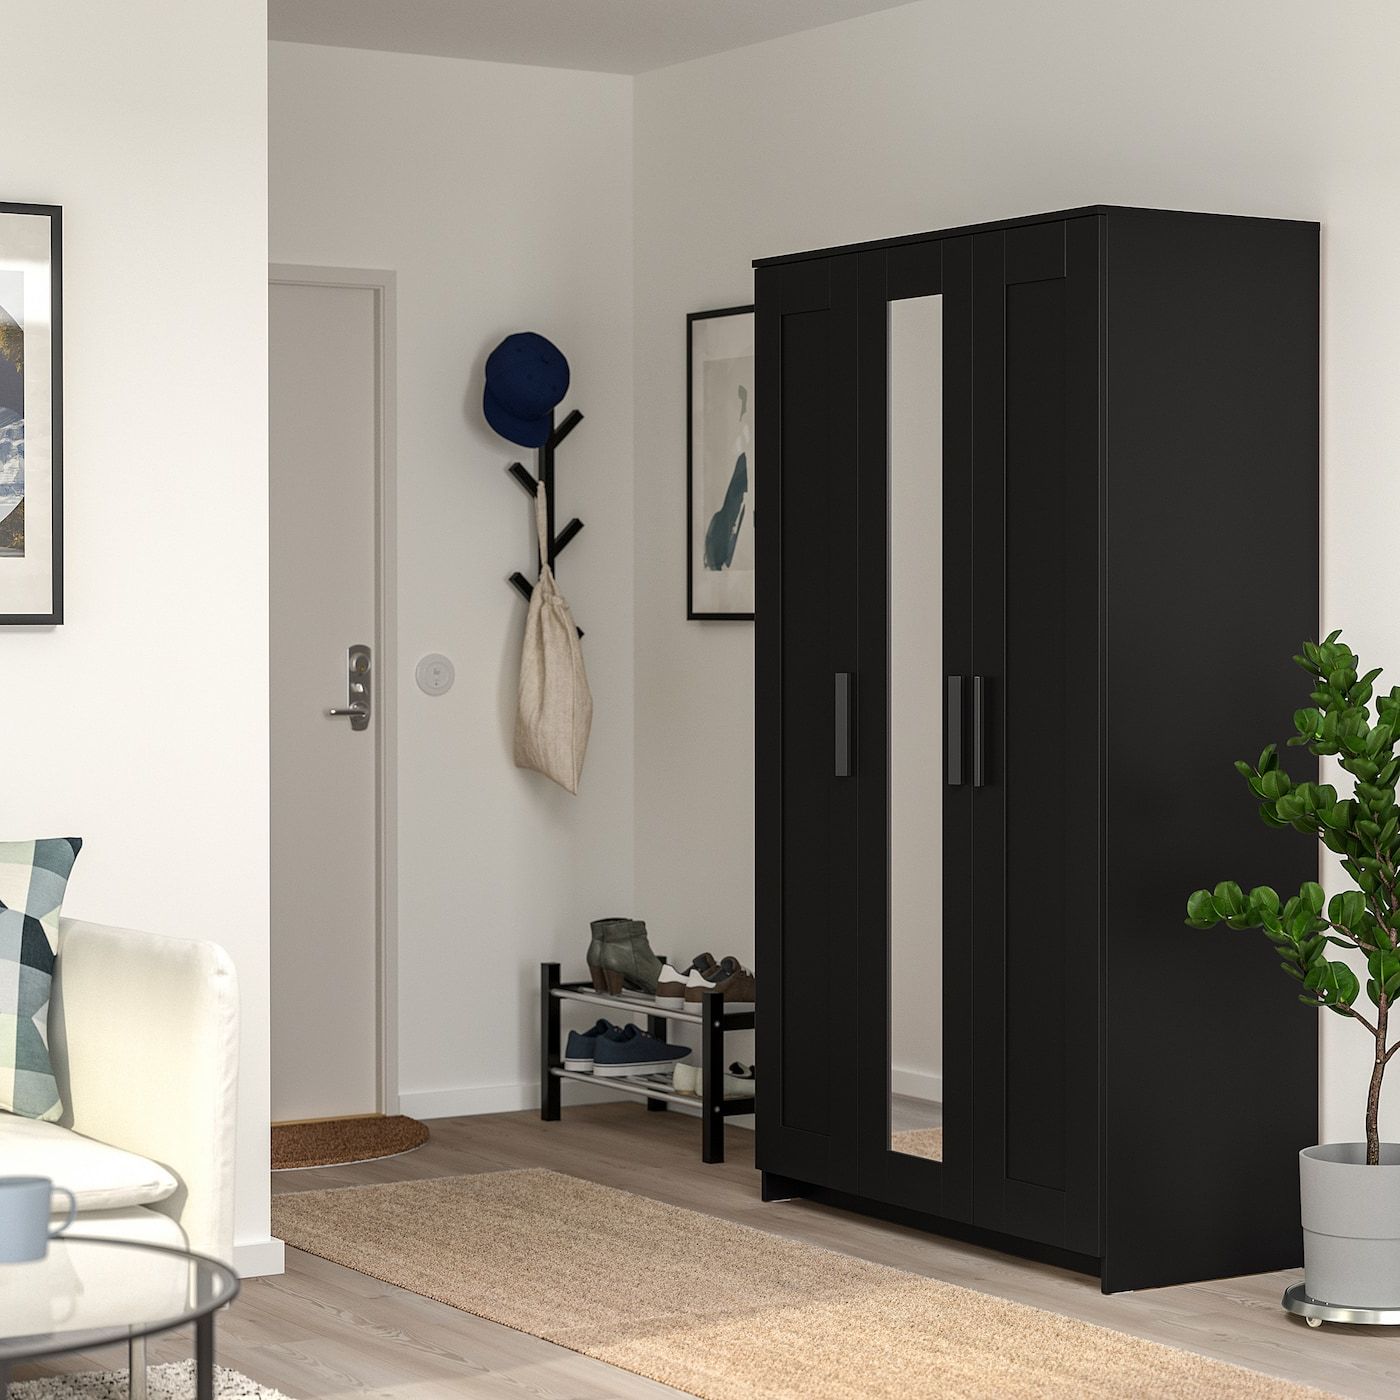 Brimnes Wardrobe With 3 Doors, Black, 46x743/4" – Ikea Intended For Black 3 Door Wardrobes (View 4 of 20)